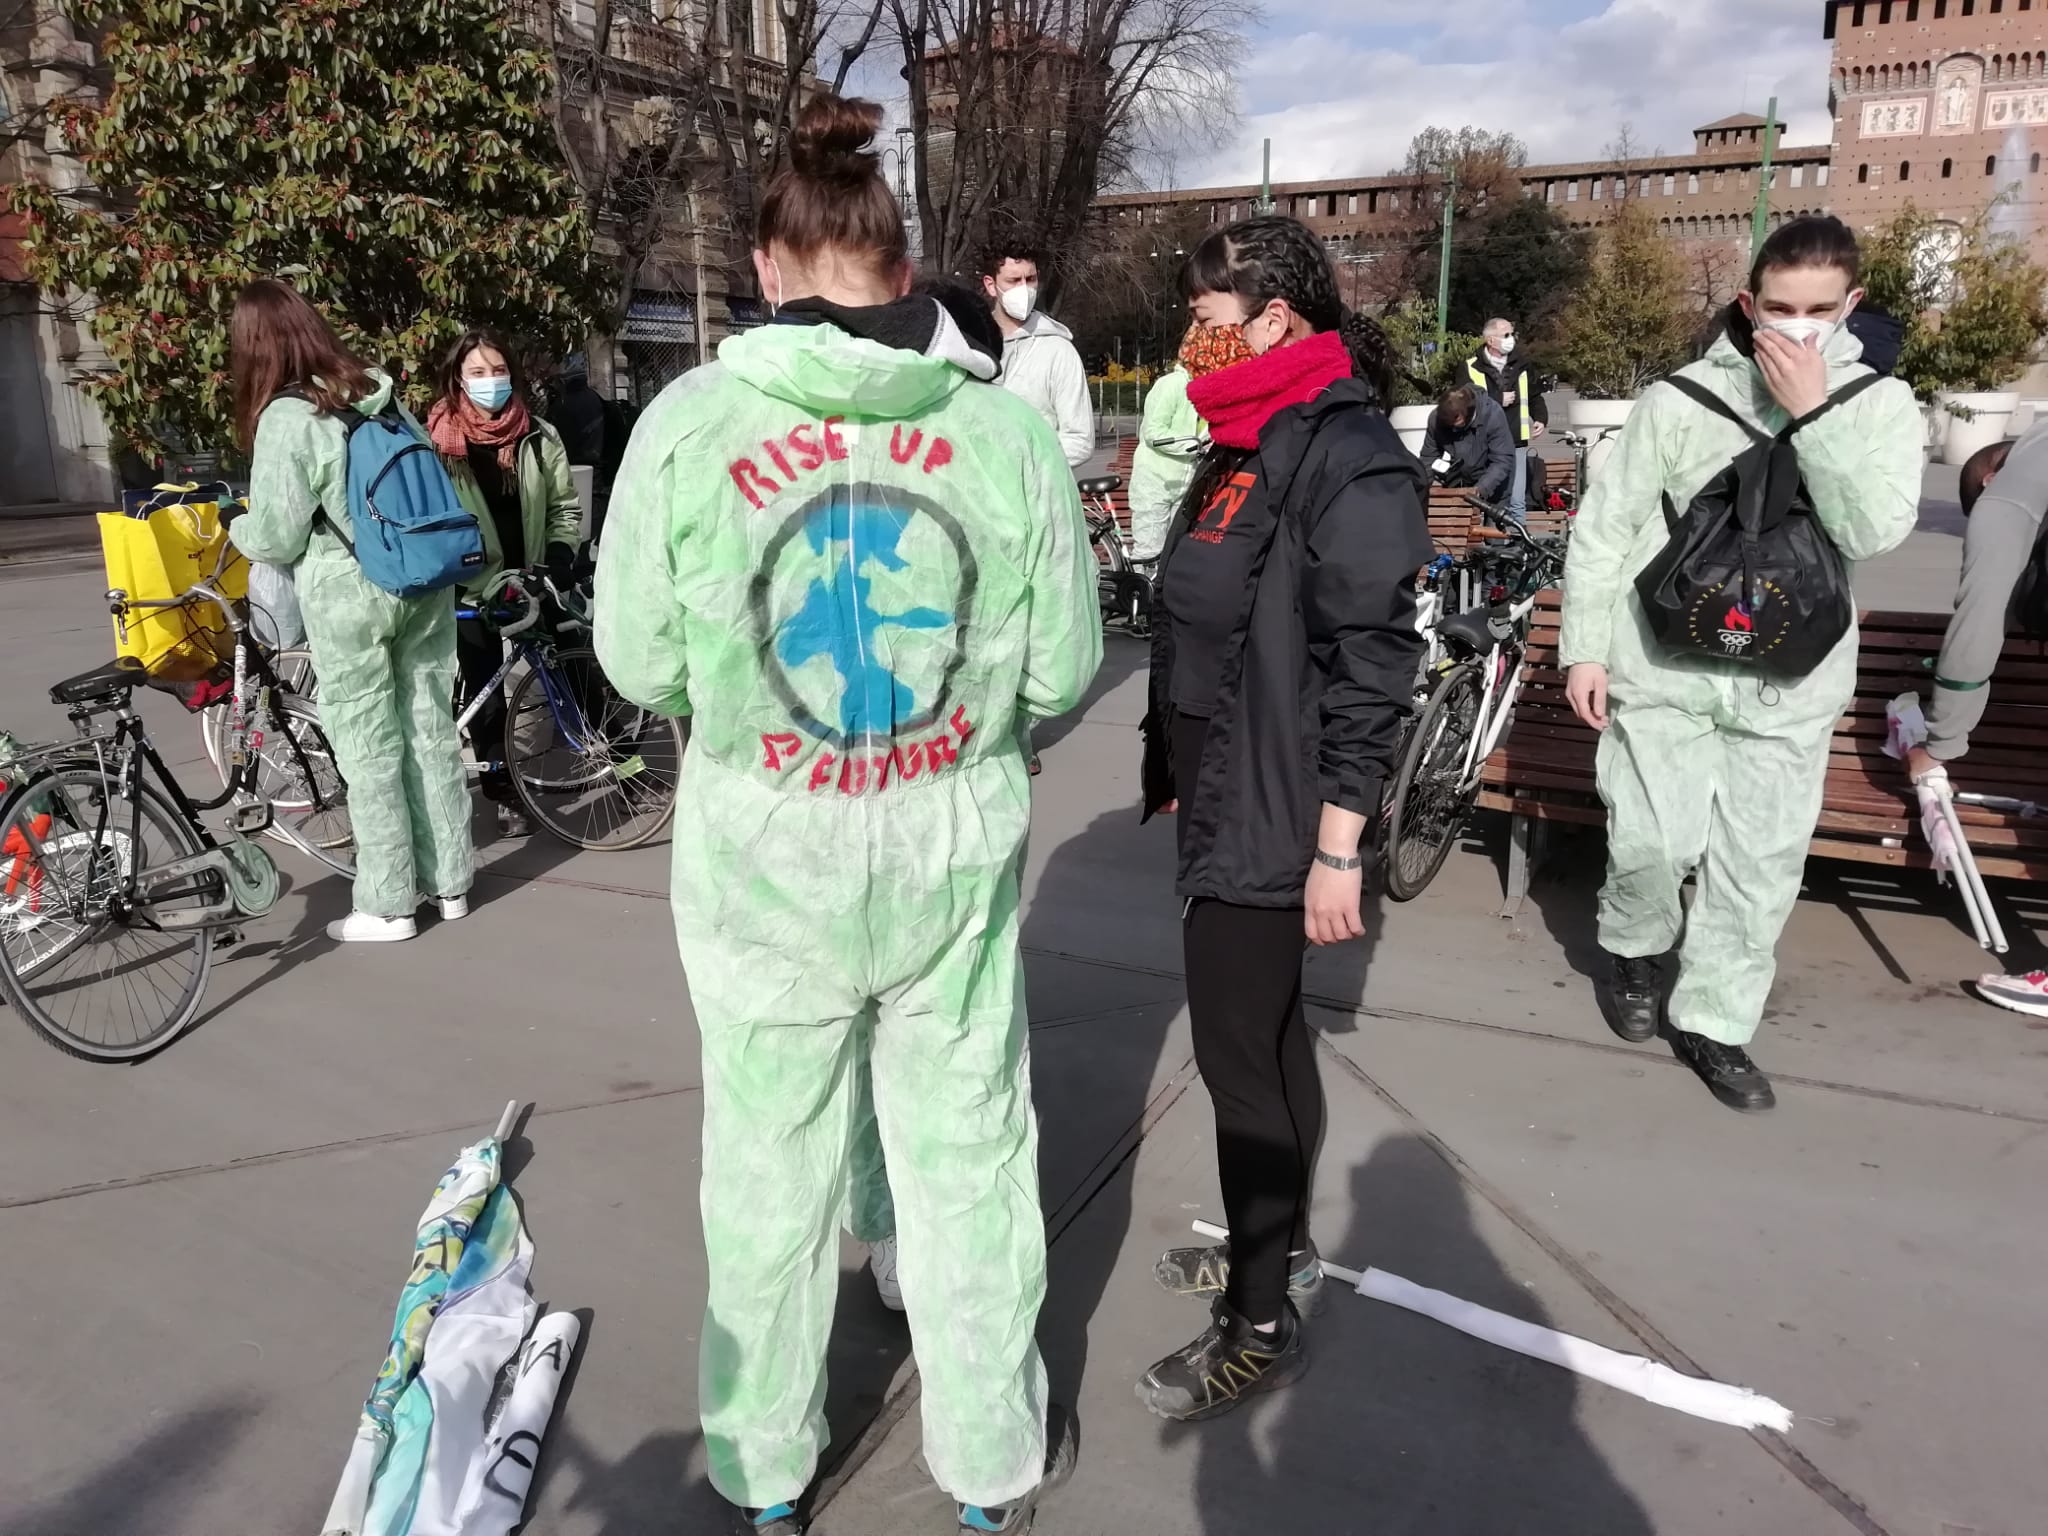 SCIOPERO PER IL CLIMA,  LA PROTESTA IN BICI DI FRIDAYS FOR FUTURE (FOTO 2)